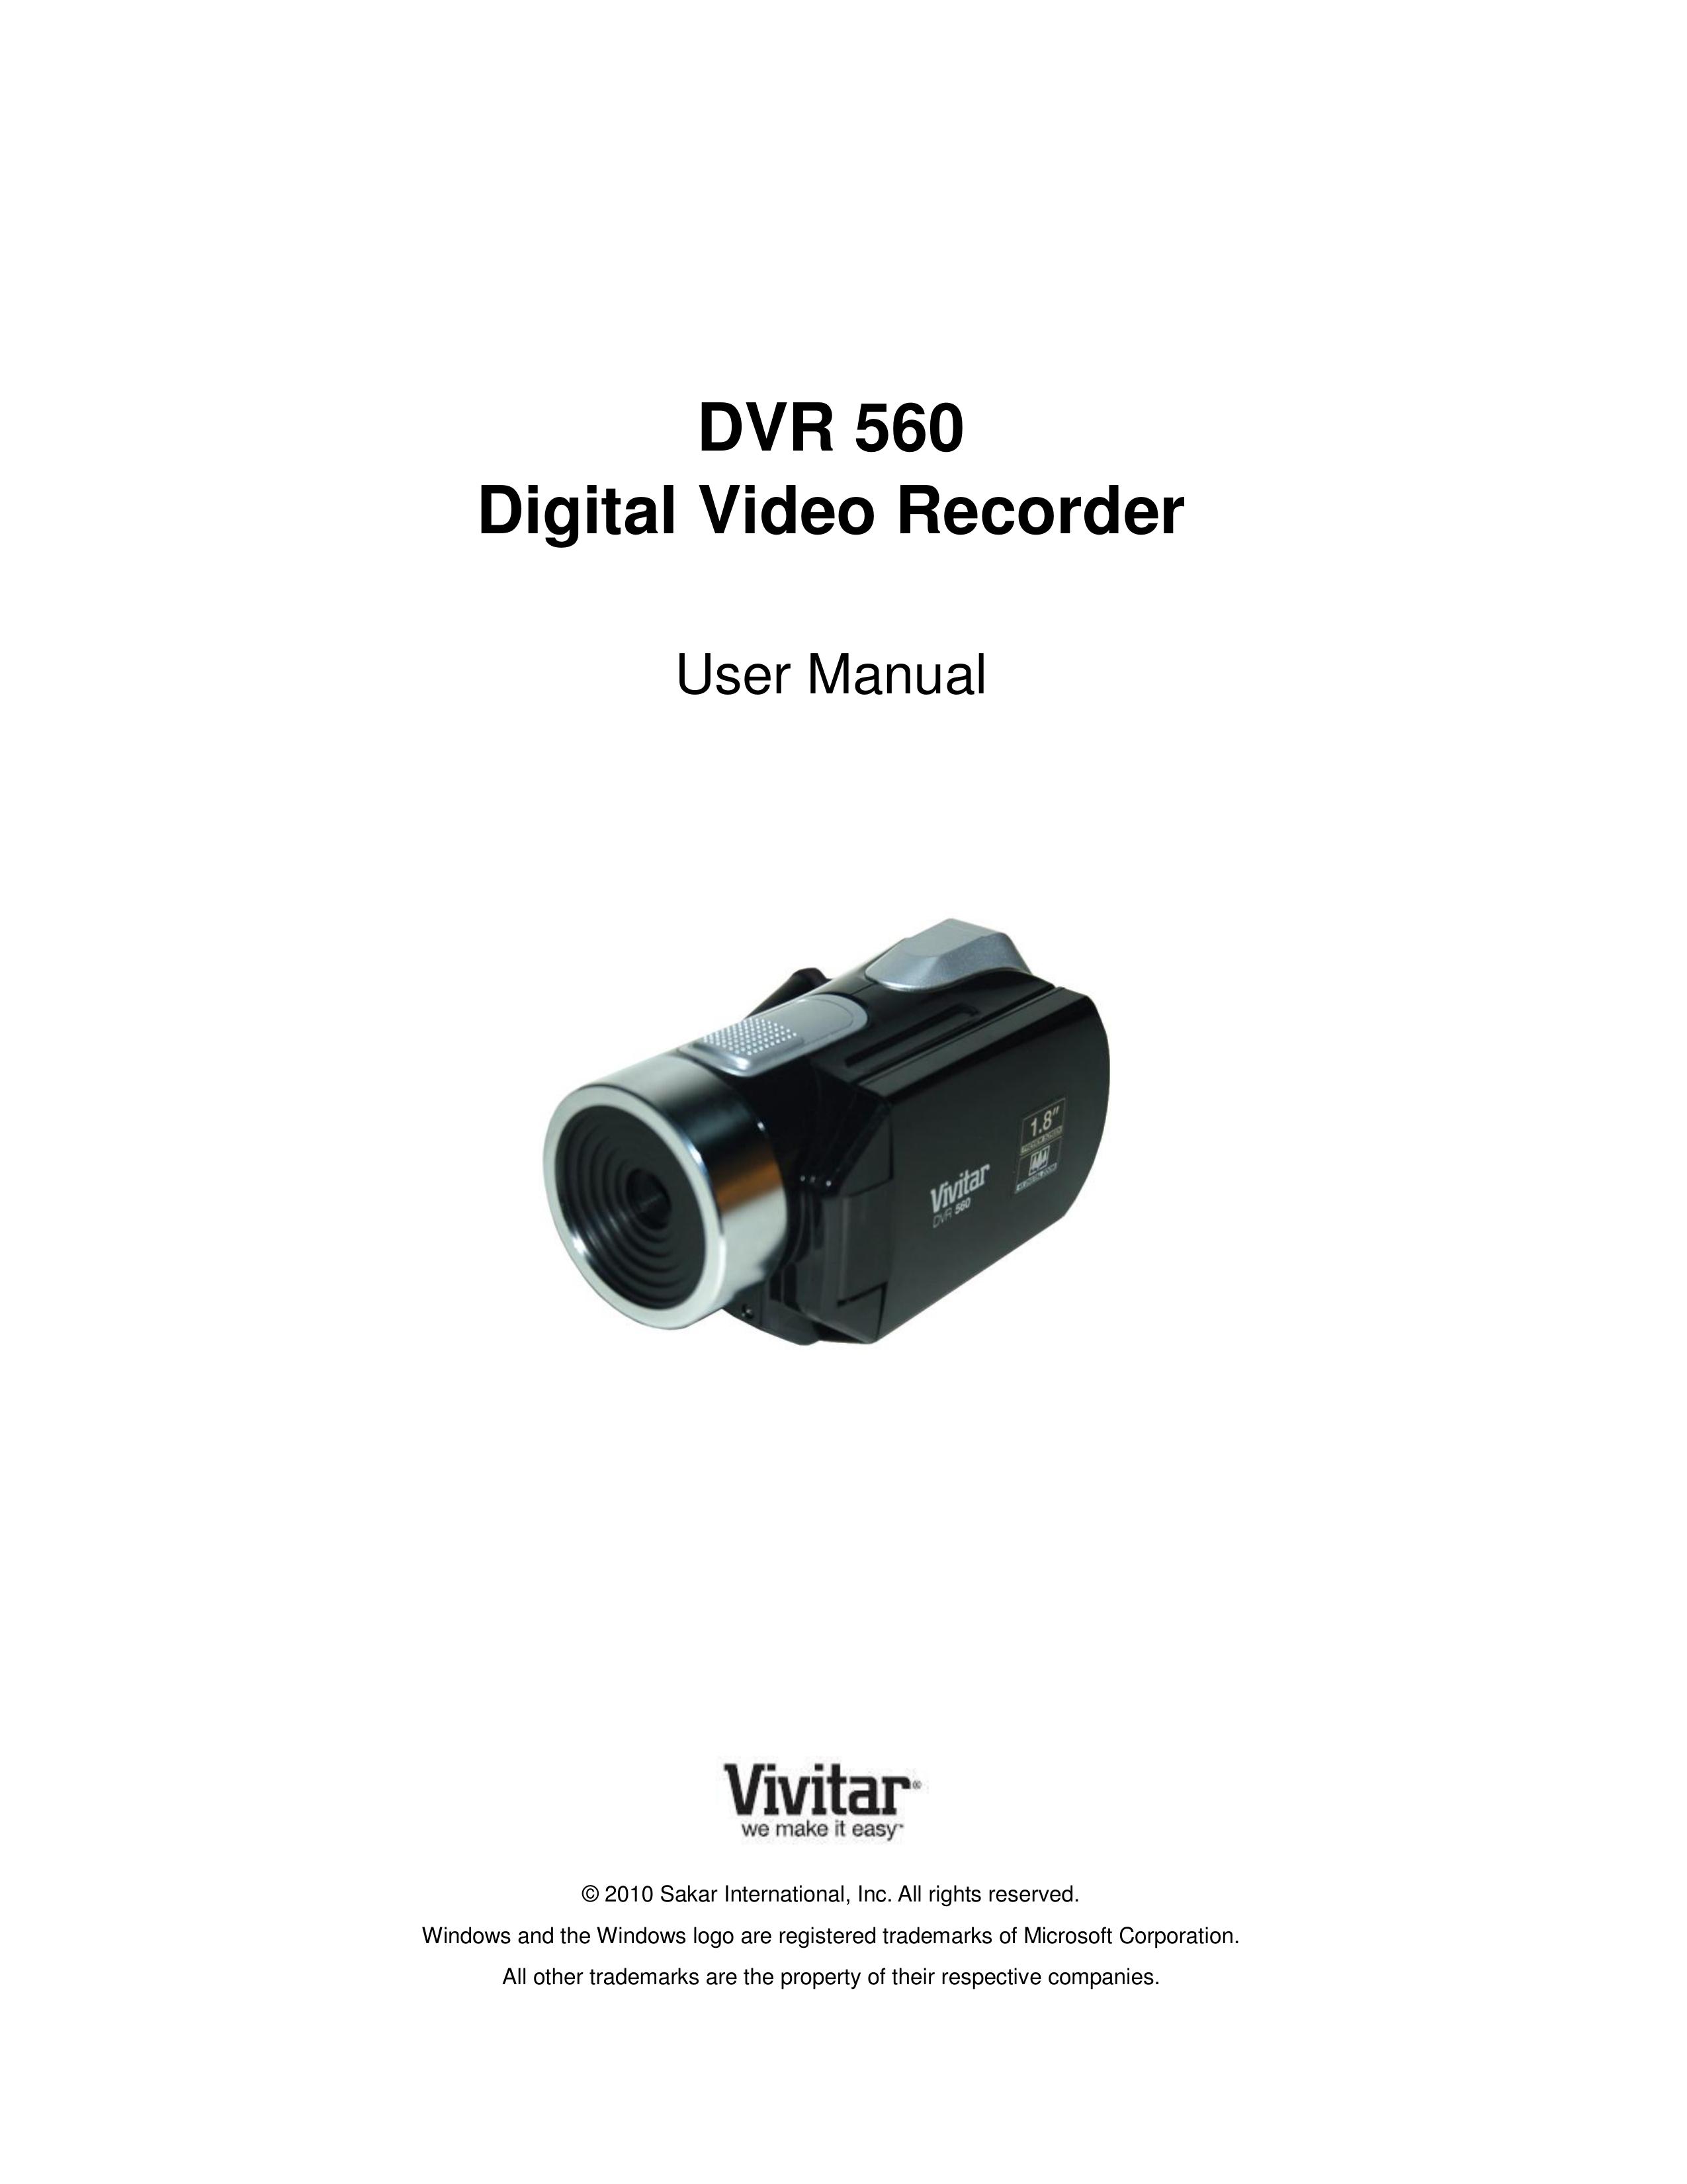 Vivitar DVR 560 Camcorder User Manual